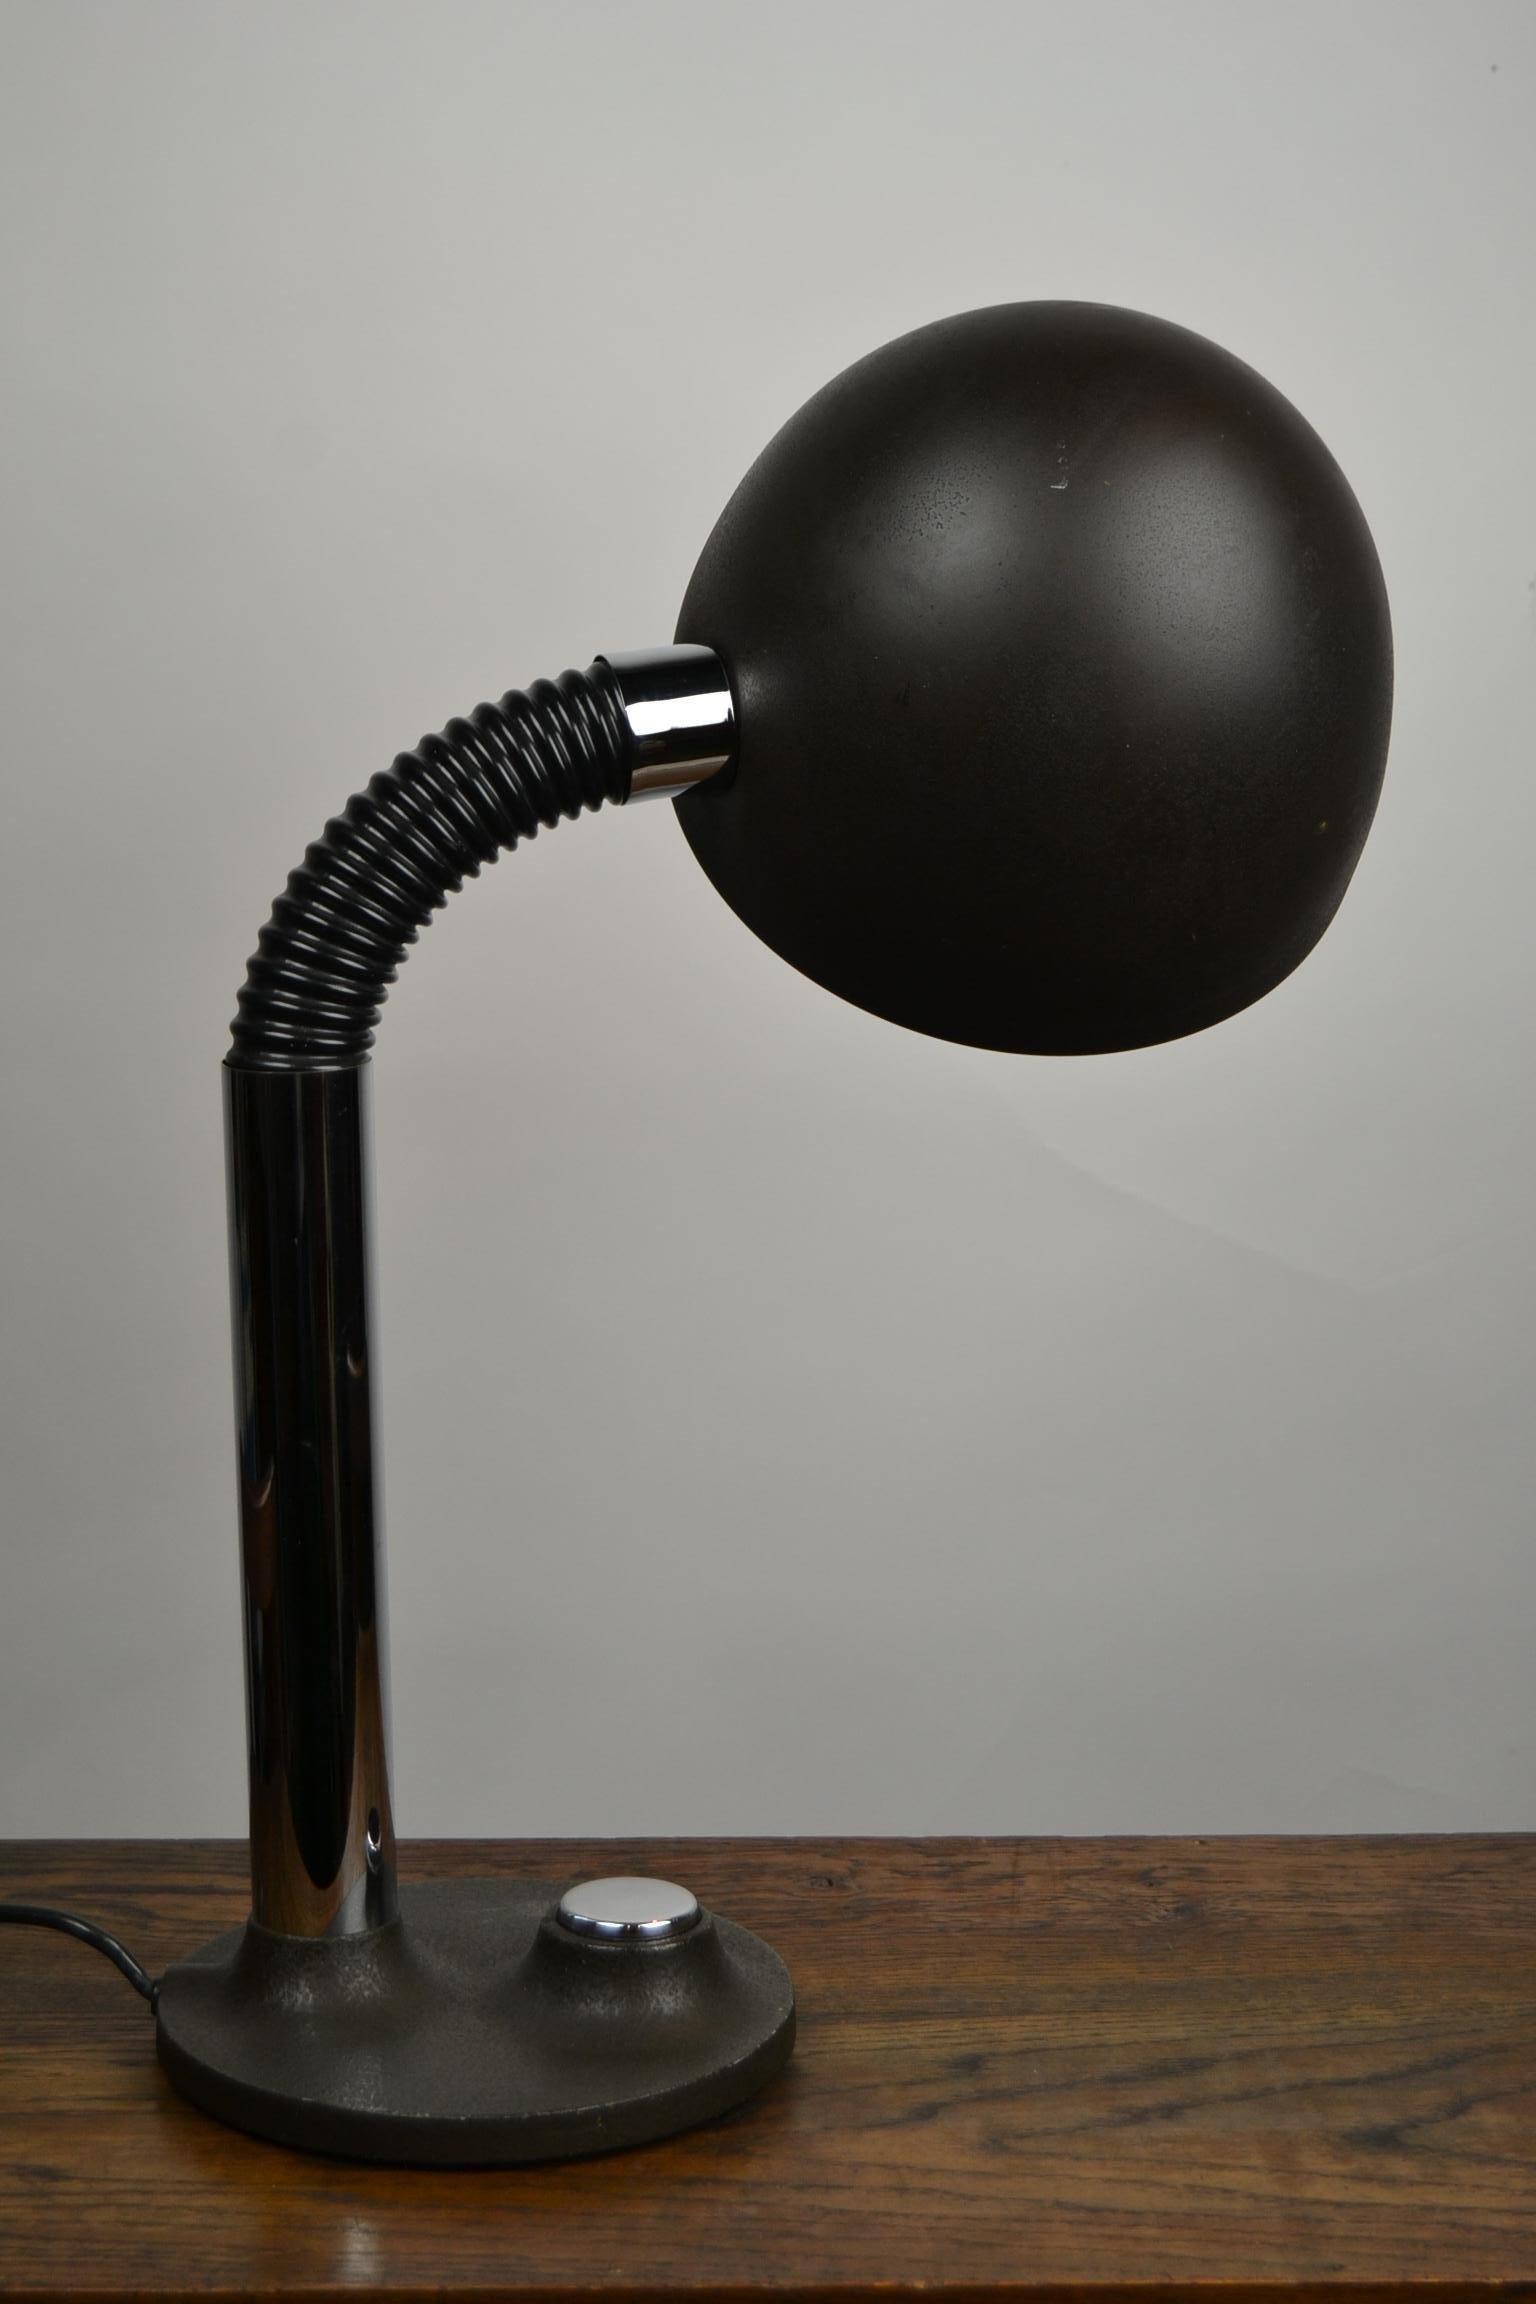 Lampe de bureau au design industriel par Egon Hillebrand pour Hillebrand Lighting.
La lampe de table est dotée d'un bras articulé et flexible qui lui permet d'éclairer vers le haut, vers le bas et sur le côté.
Ce luminaire des années 1970 est doté